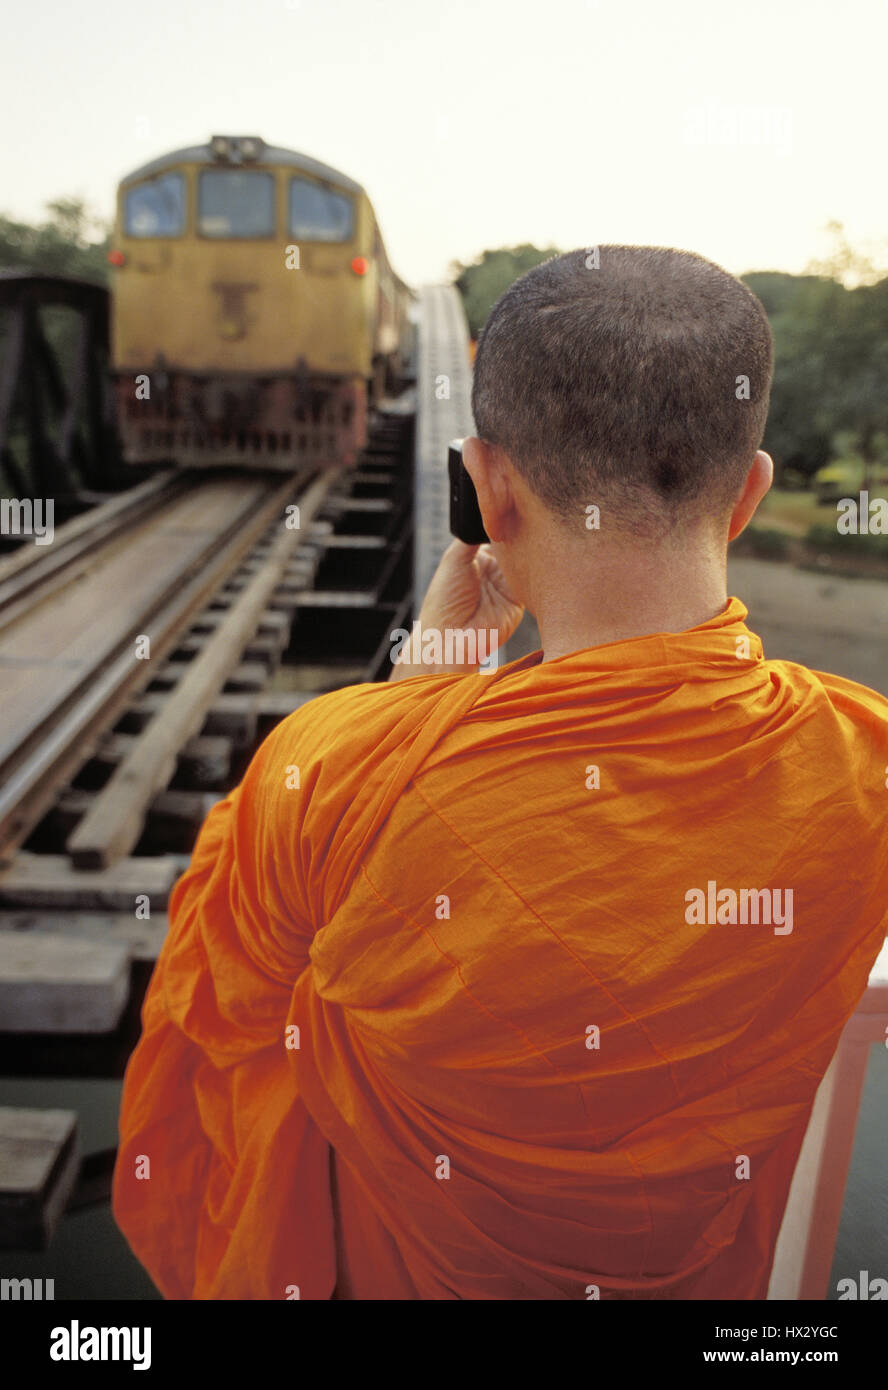 Buddhistischer Mönch Brücke und Zug zu fotografieren. Stockfoto